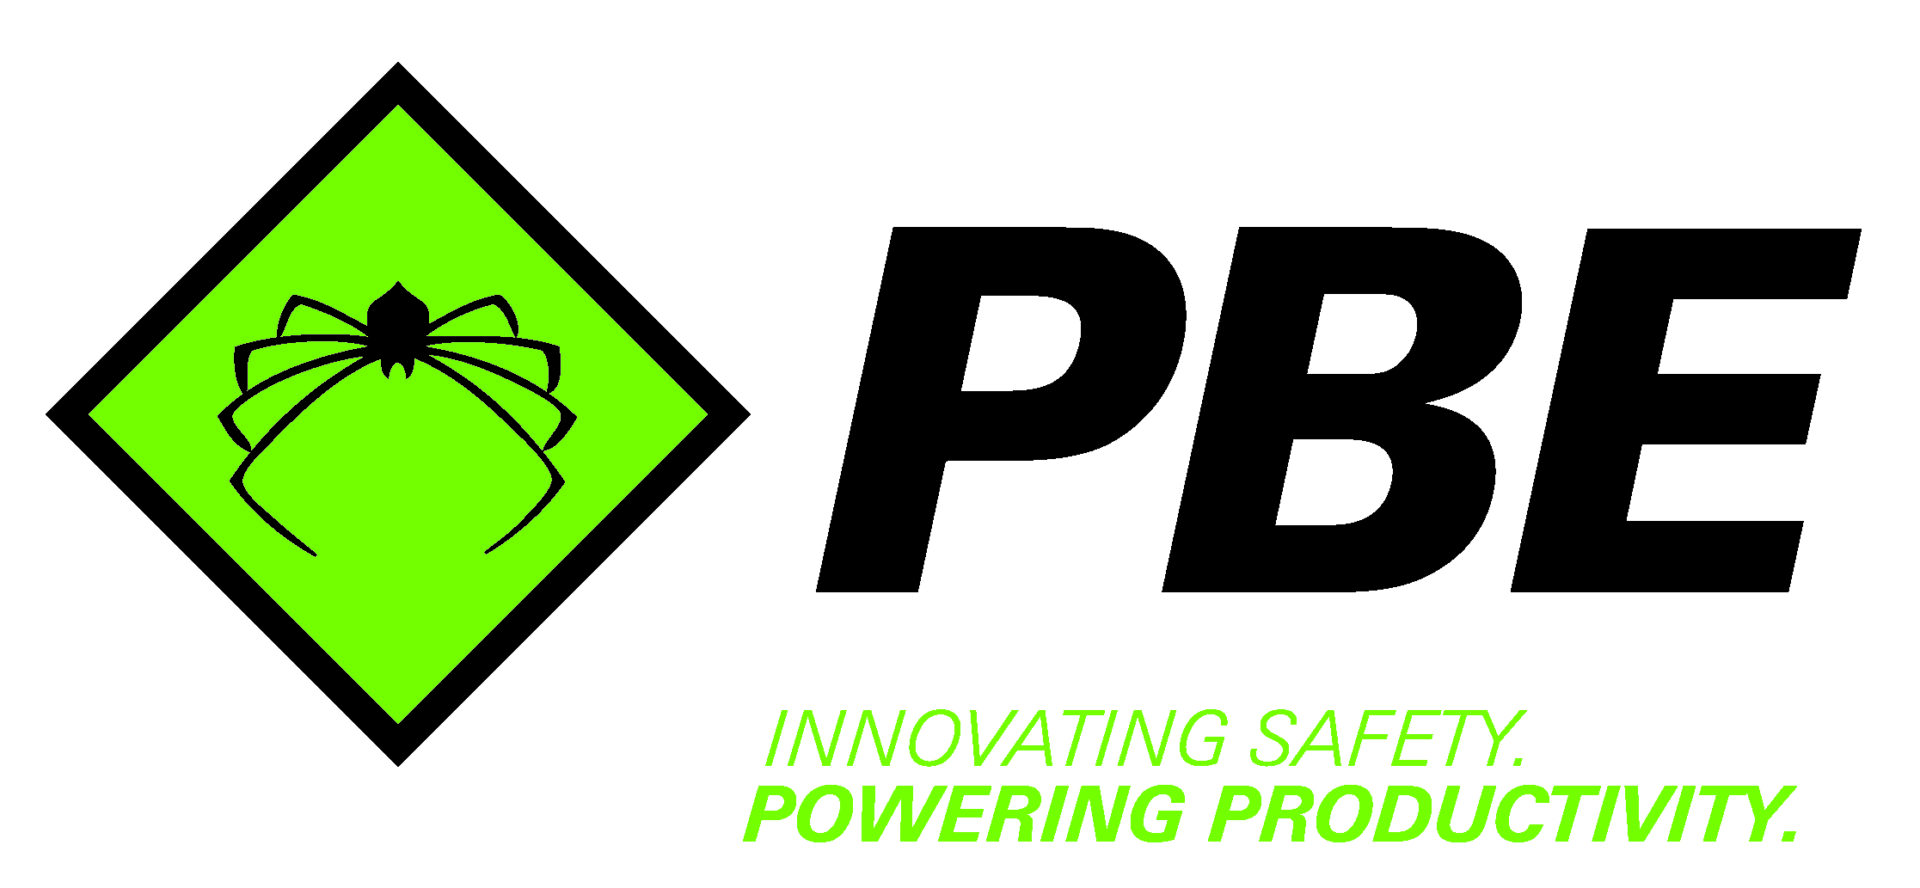 Pbe - innovative safety, powering productivity.